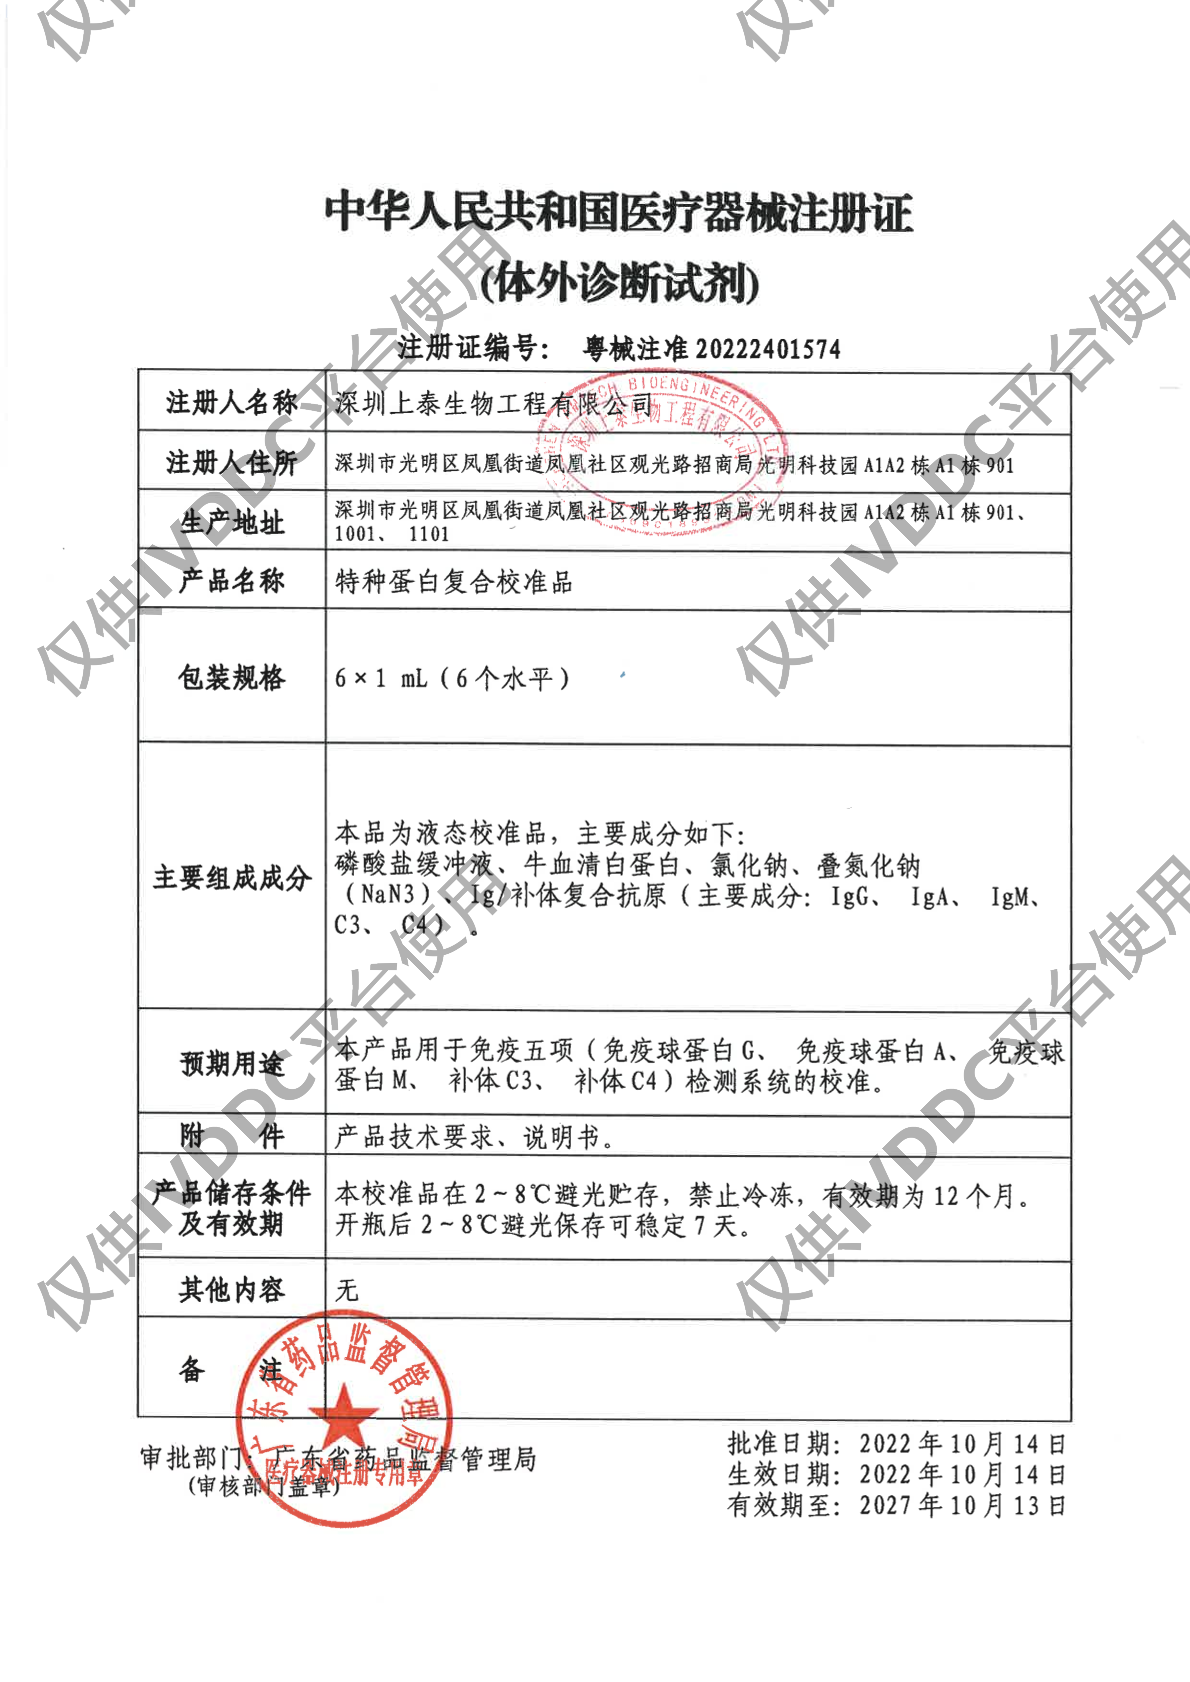 【深圳上泰】特种蛋白复合校准品注册证